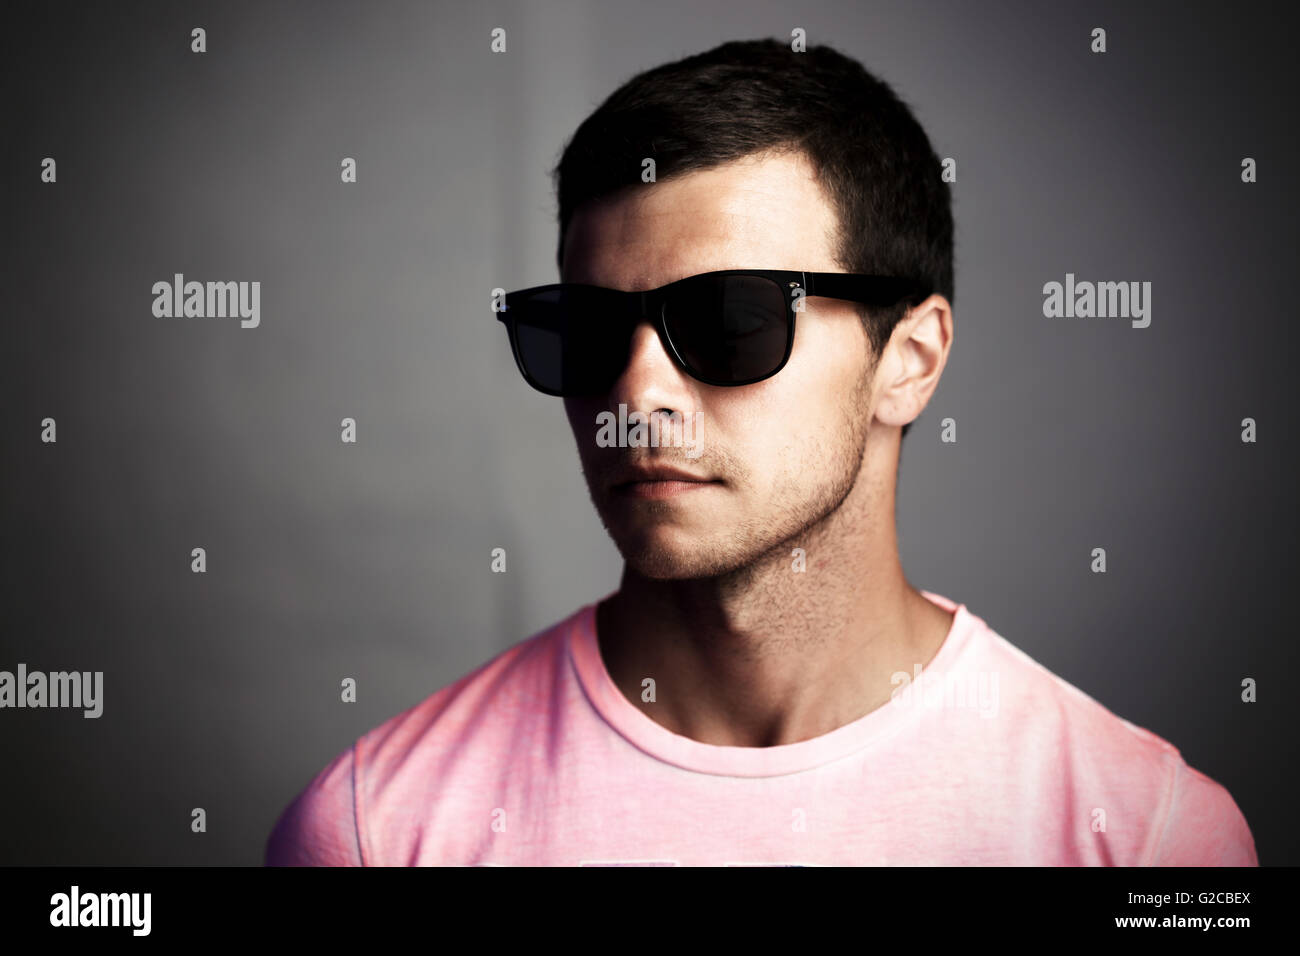 Portrait sombre d'un jeune homme à lunettes, l'isolement social et l'anonymat concept Banque D'Images